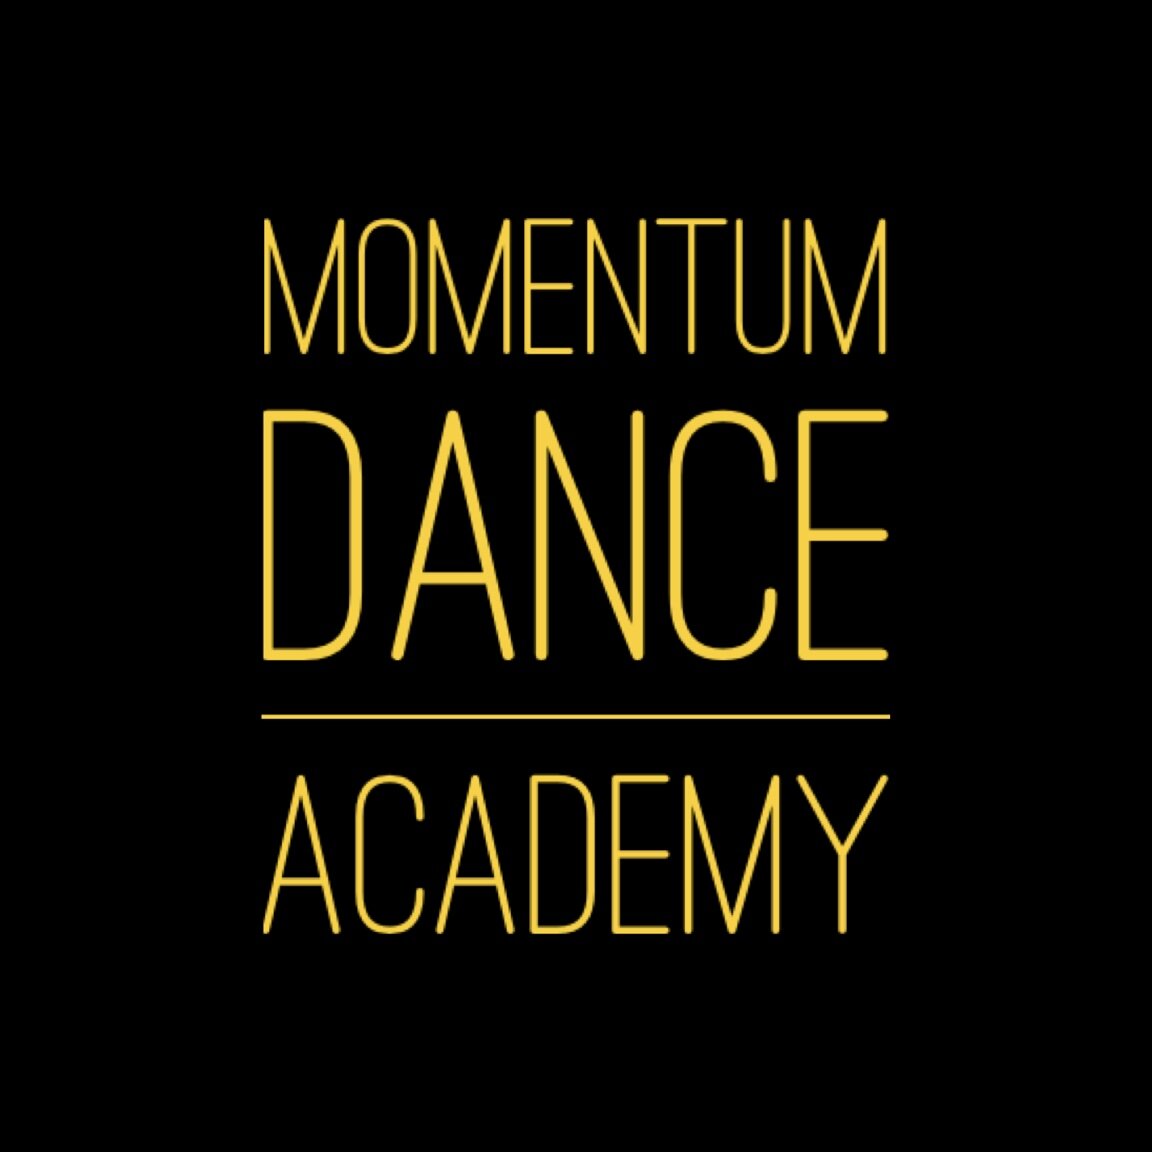 MomenTum Dance Academy